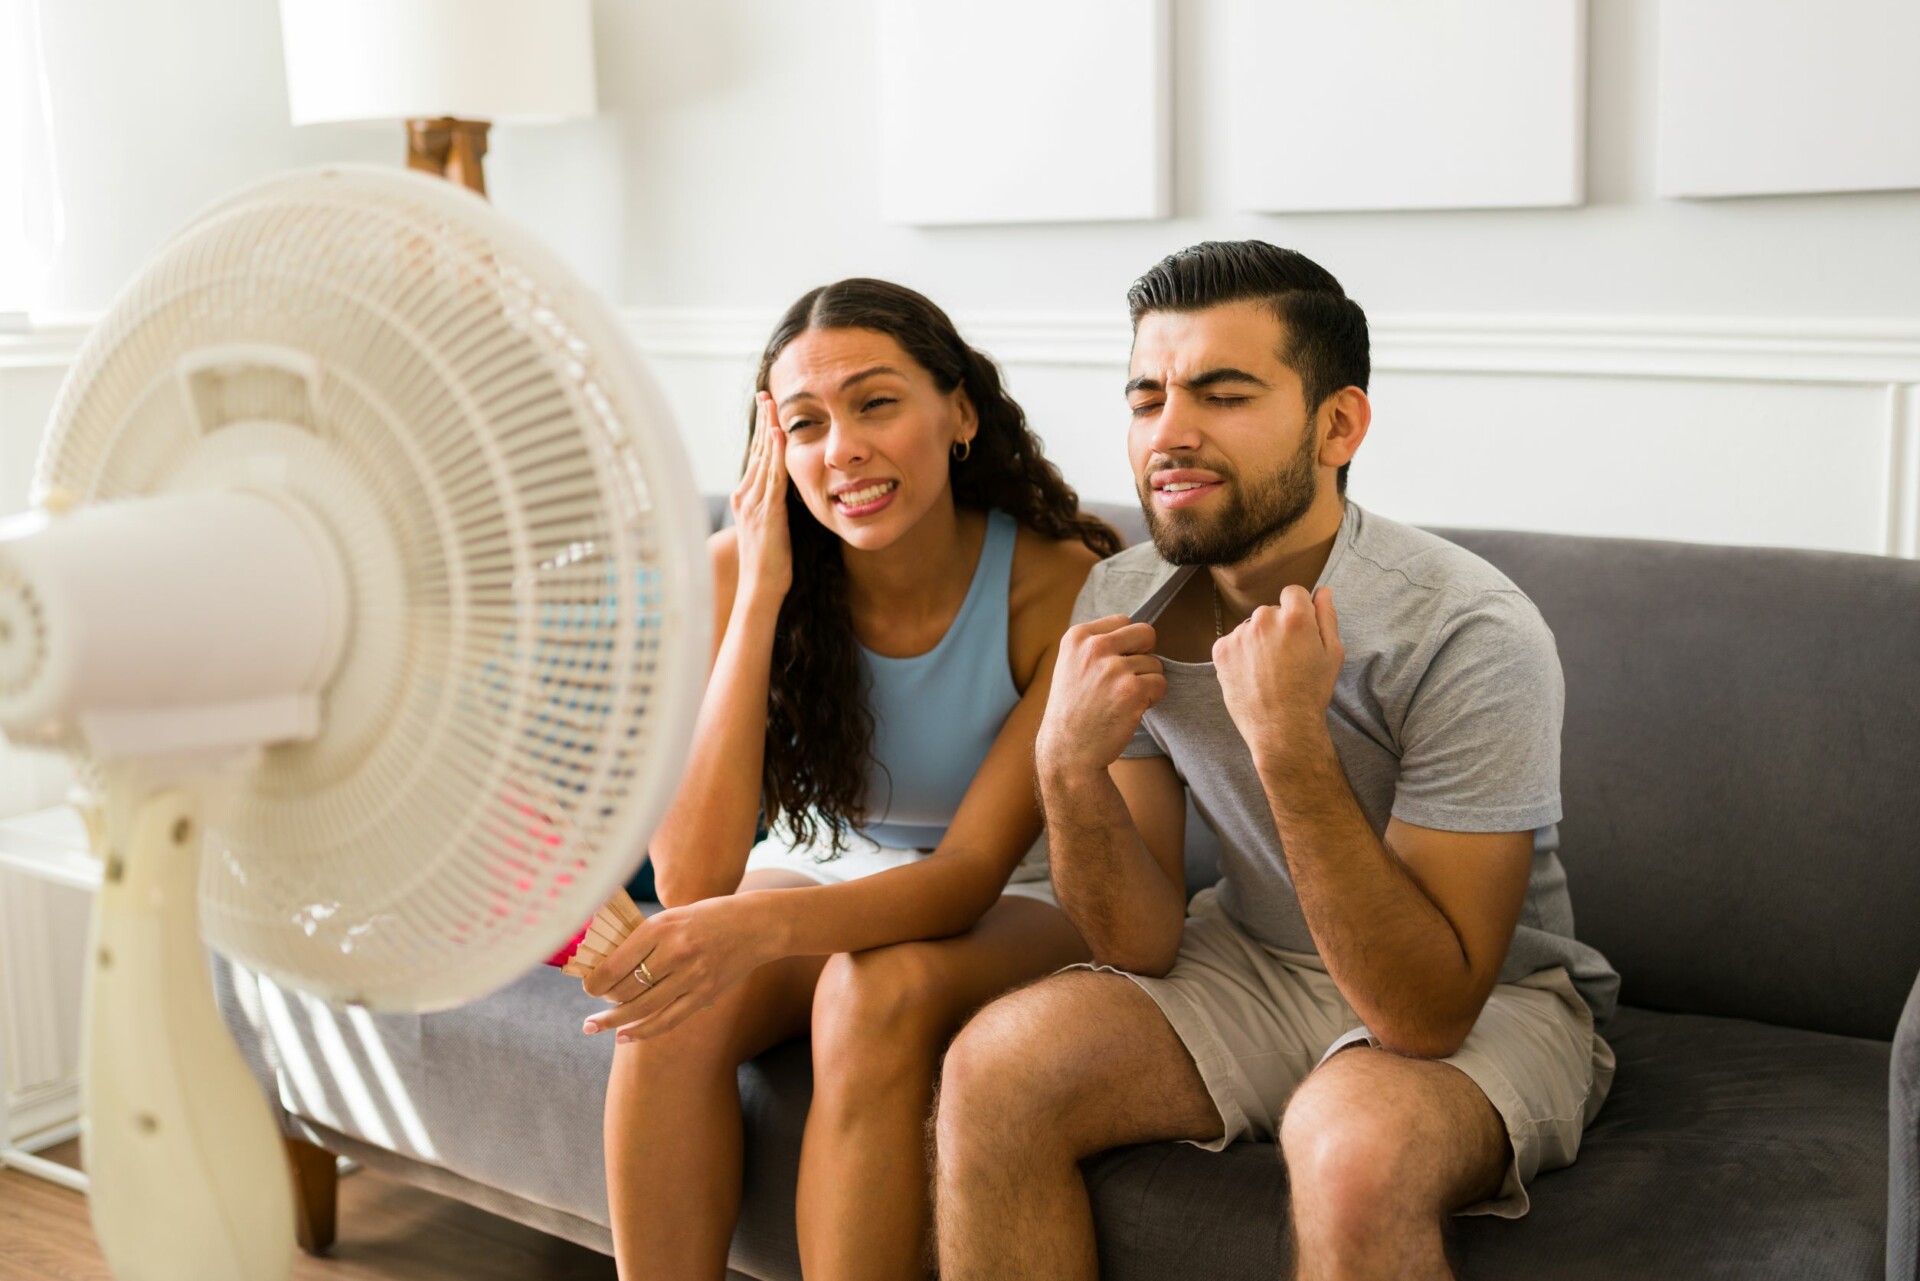 Sind Ventilatoren umweltschädlich? 6 überraschende Fakten